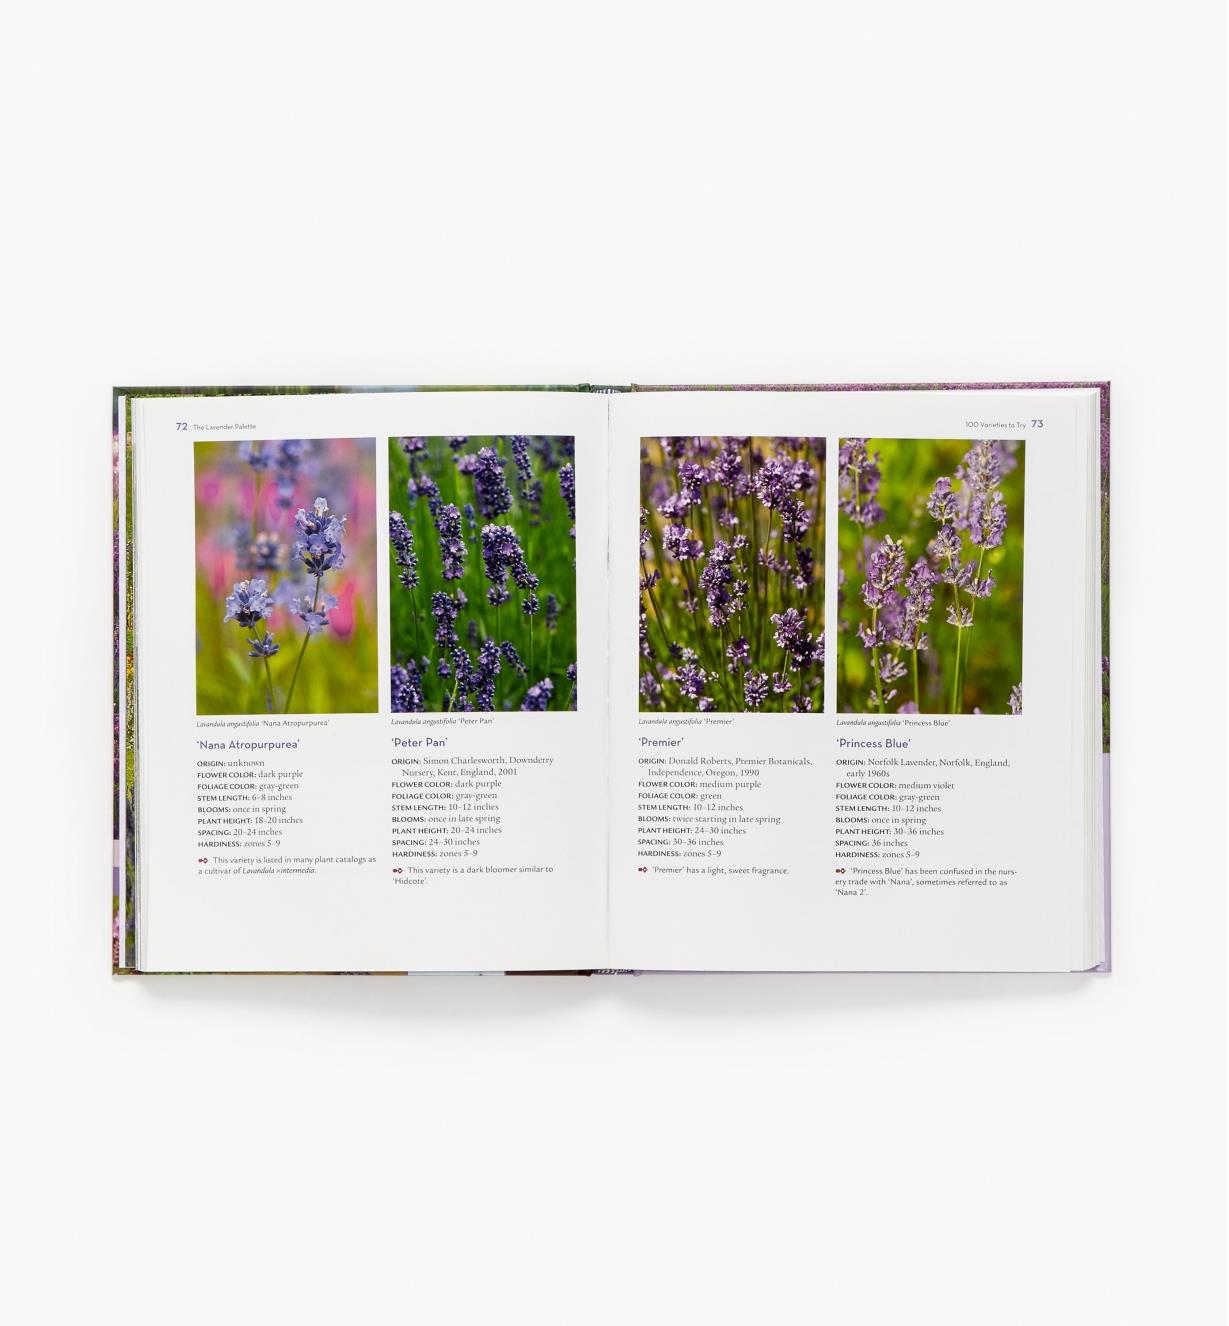 LA962 - The Lavender Lover's Handbook